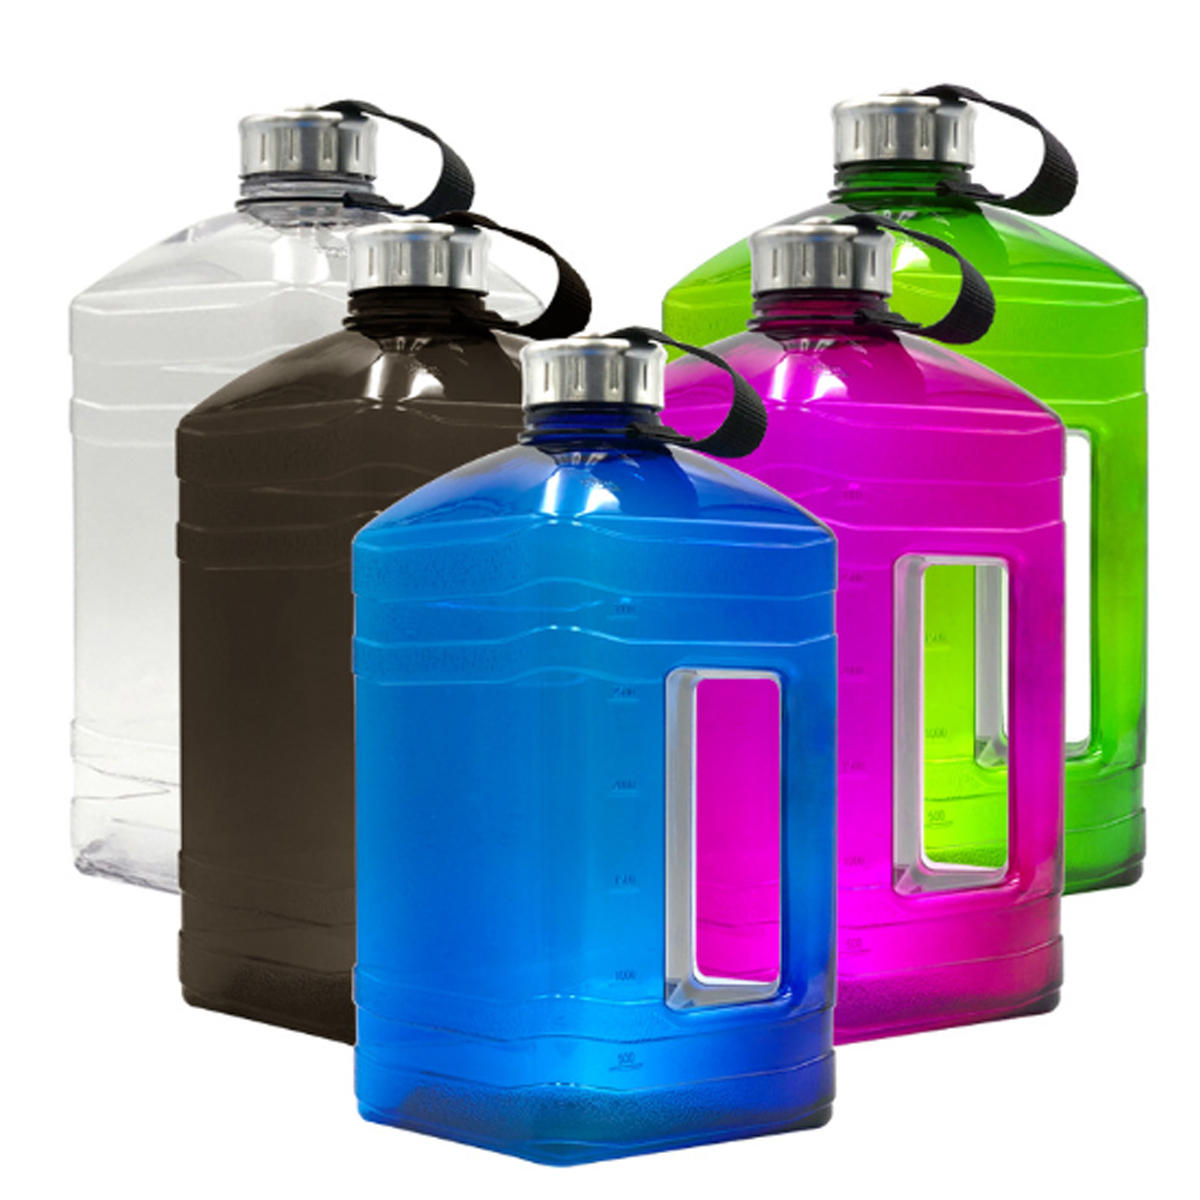 Sportwasserflasche aus PETG mit großem Fassungsvermögen von 3,8 Litern für Fitness, Laufen und Wandern.